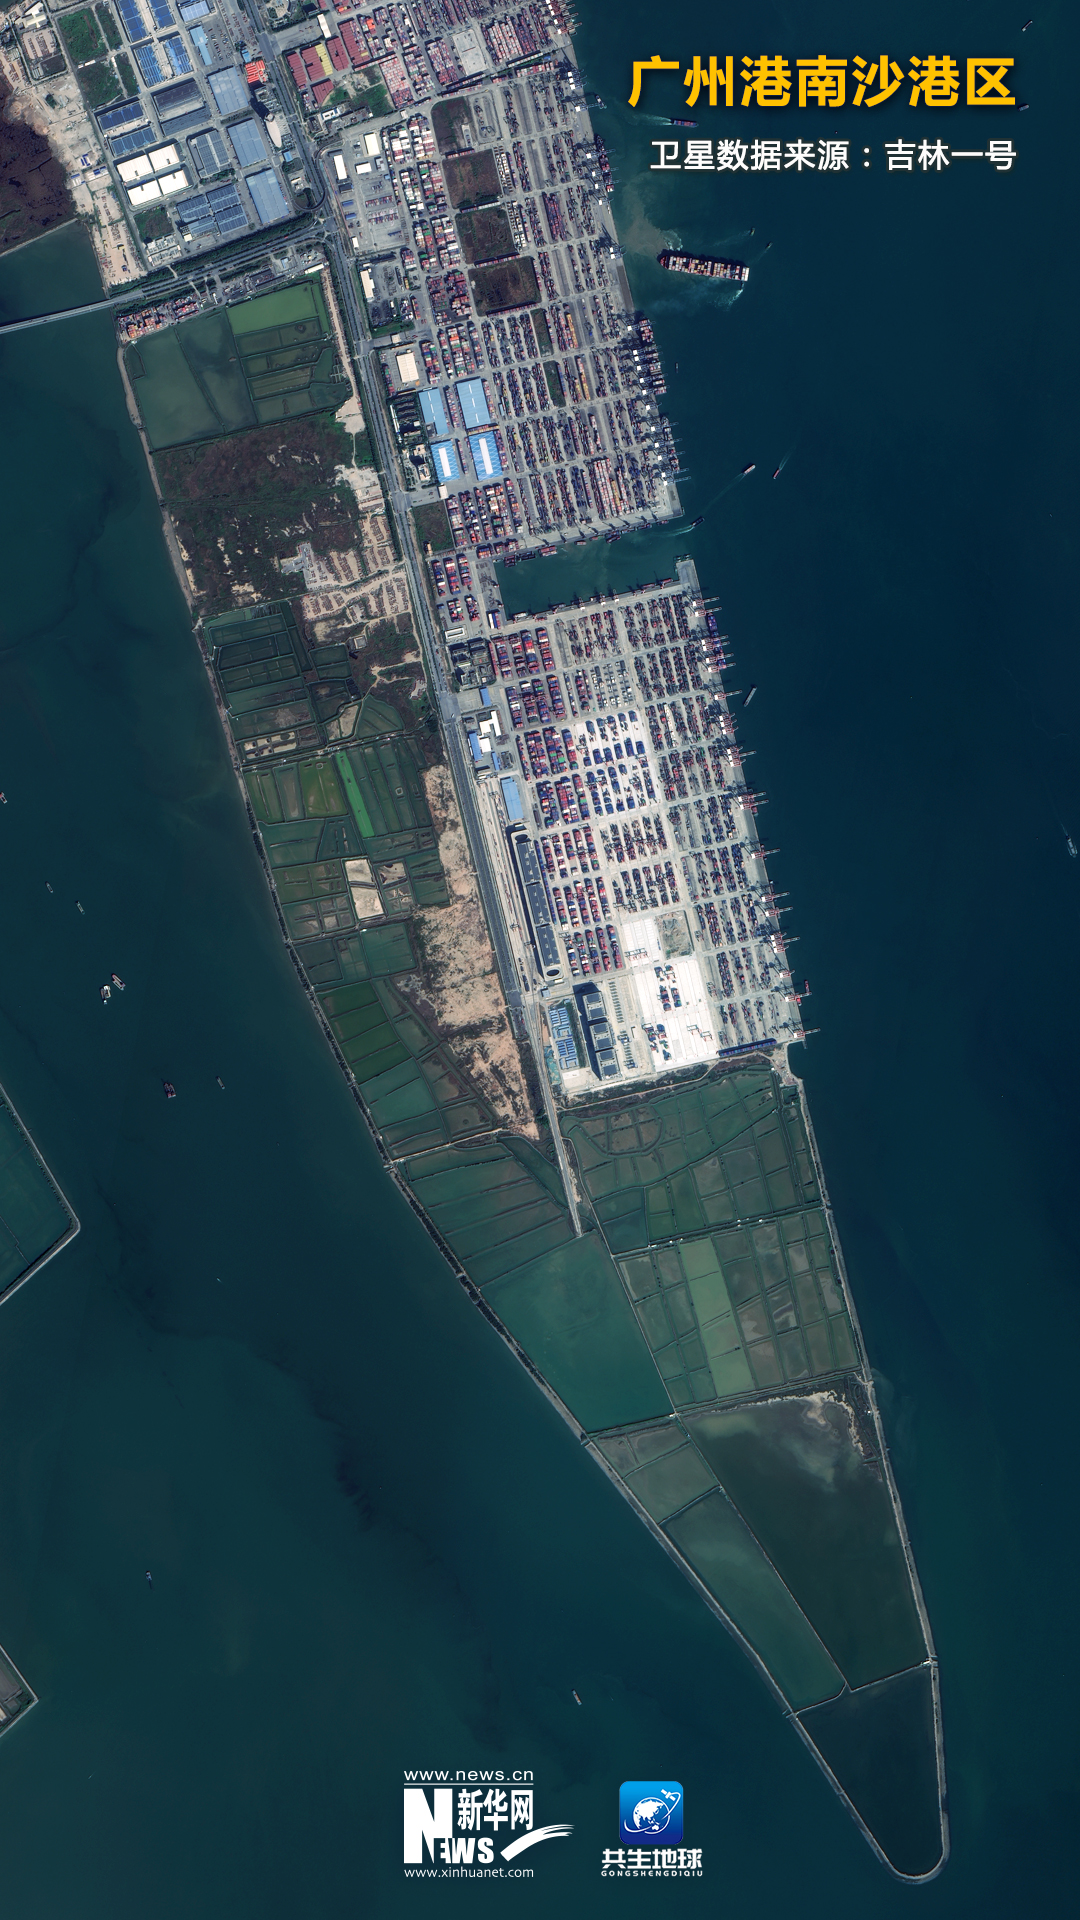 卫星“瞰”奋进中国里的忙碌港口